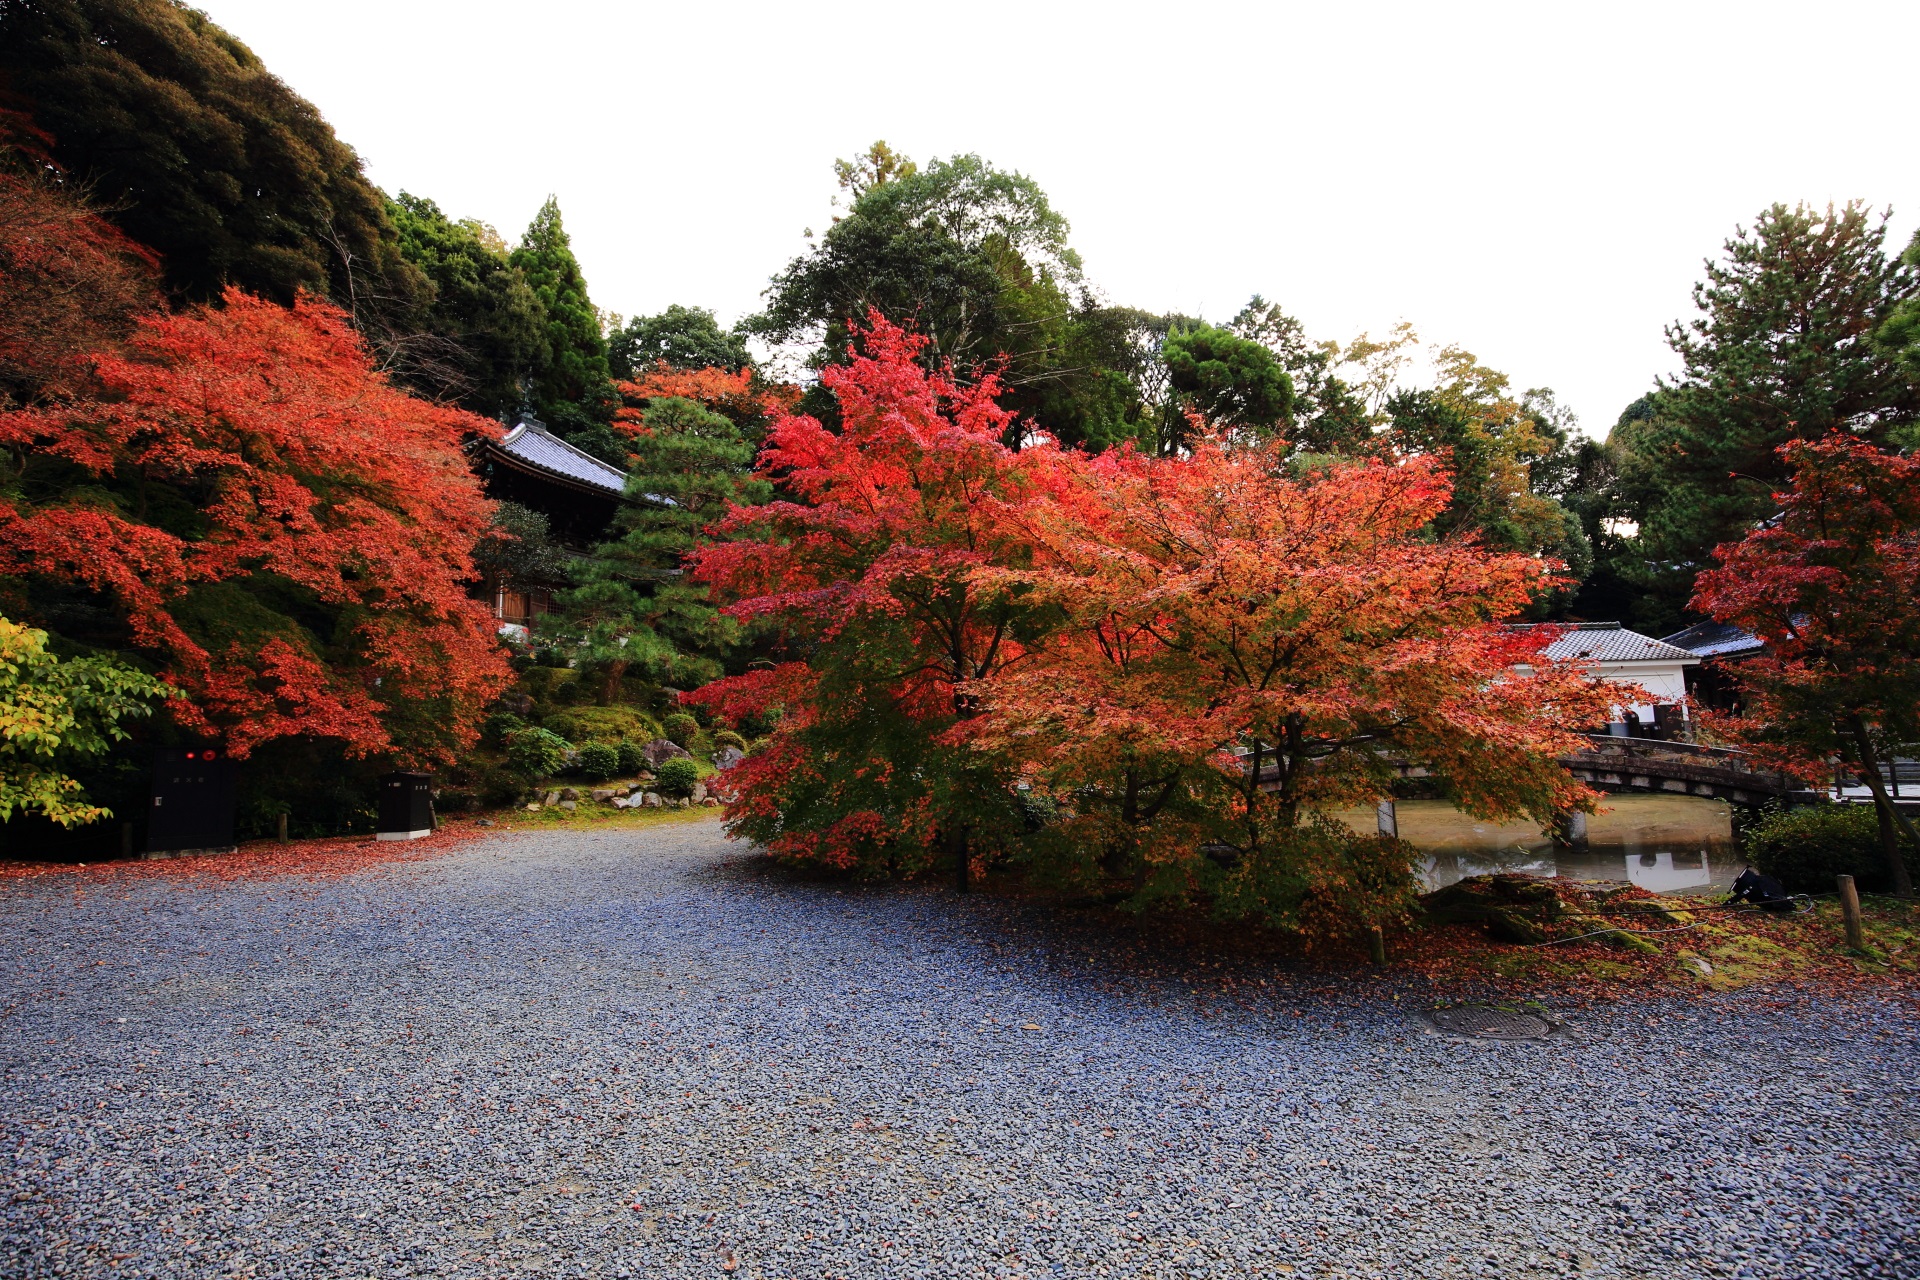 知恩院の納骨堂前の溢れる多彩な紅葉